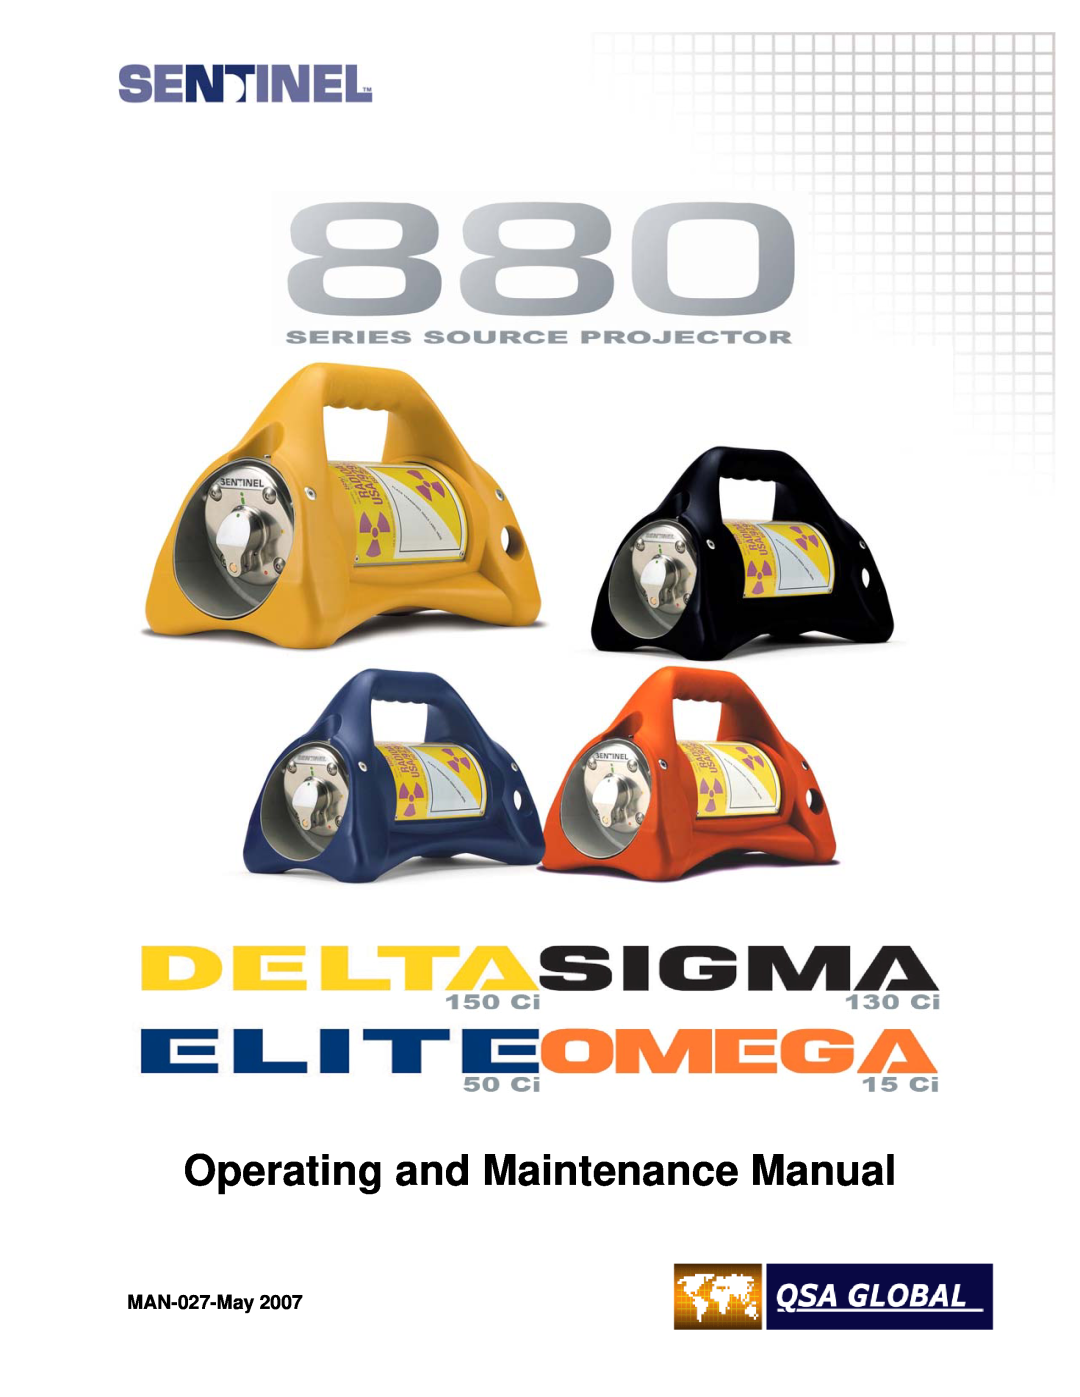 Sigma projetor manual Operating and Maintenance Manual, MAN-027-May 